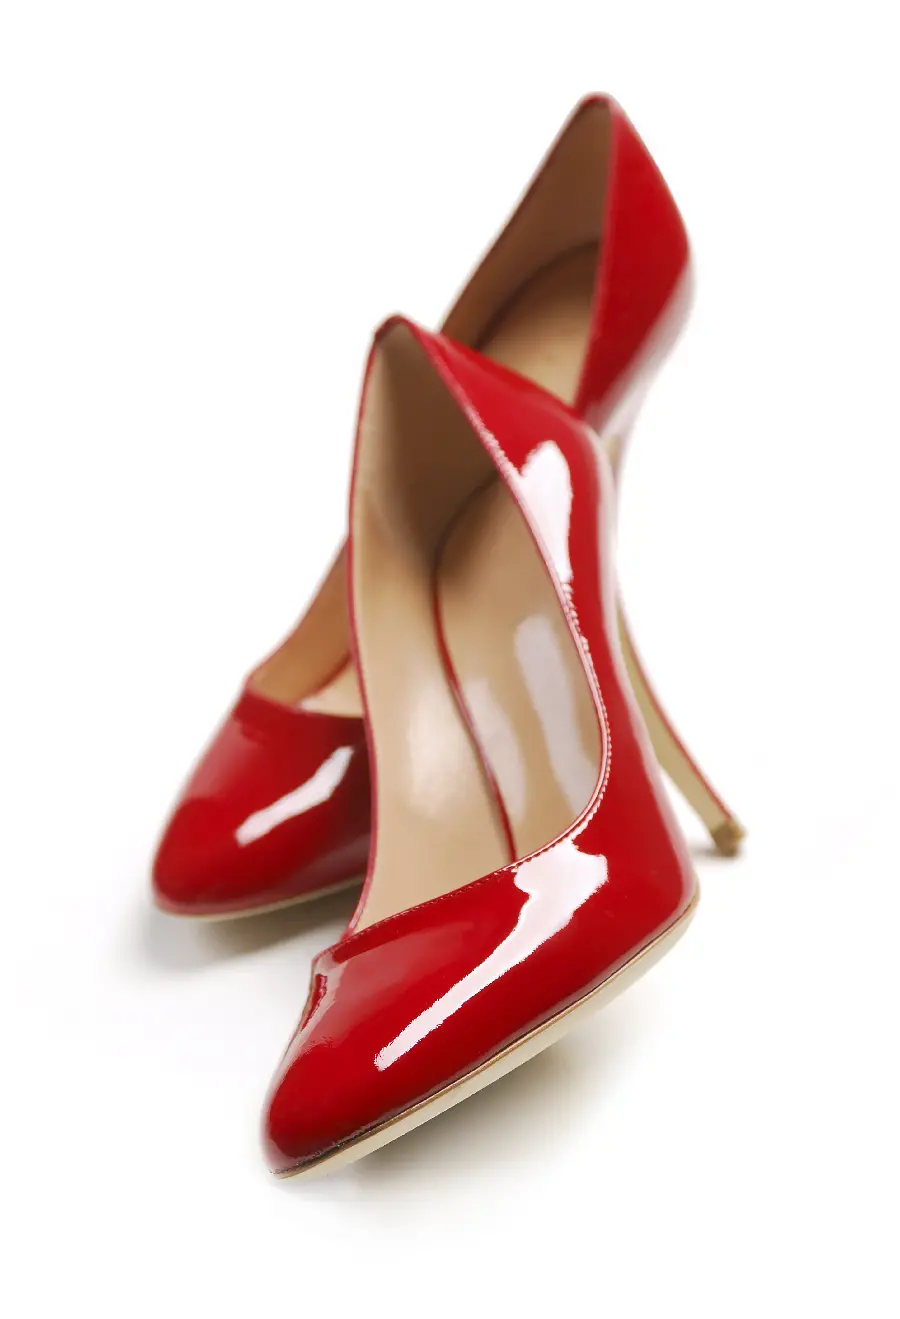 عکس پس زمینه قشنگ و دیدنی با طرح کفش های پاشنه بلند زنانه قرمز